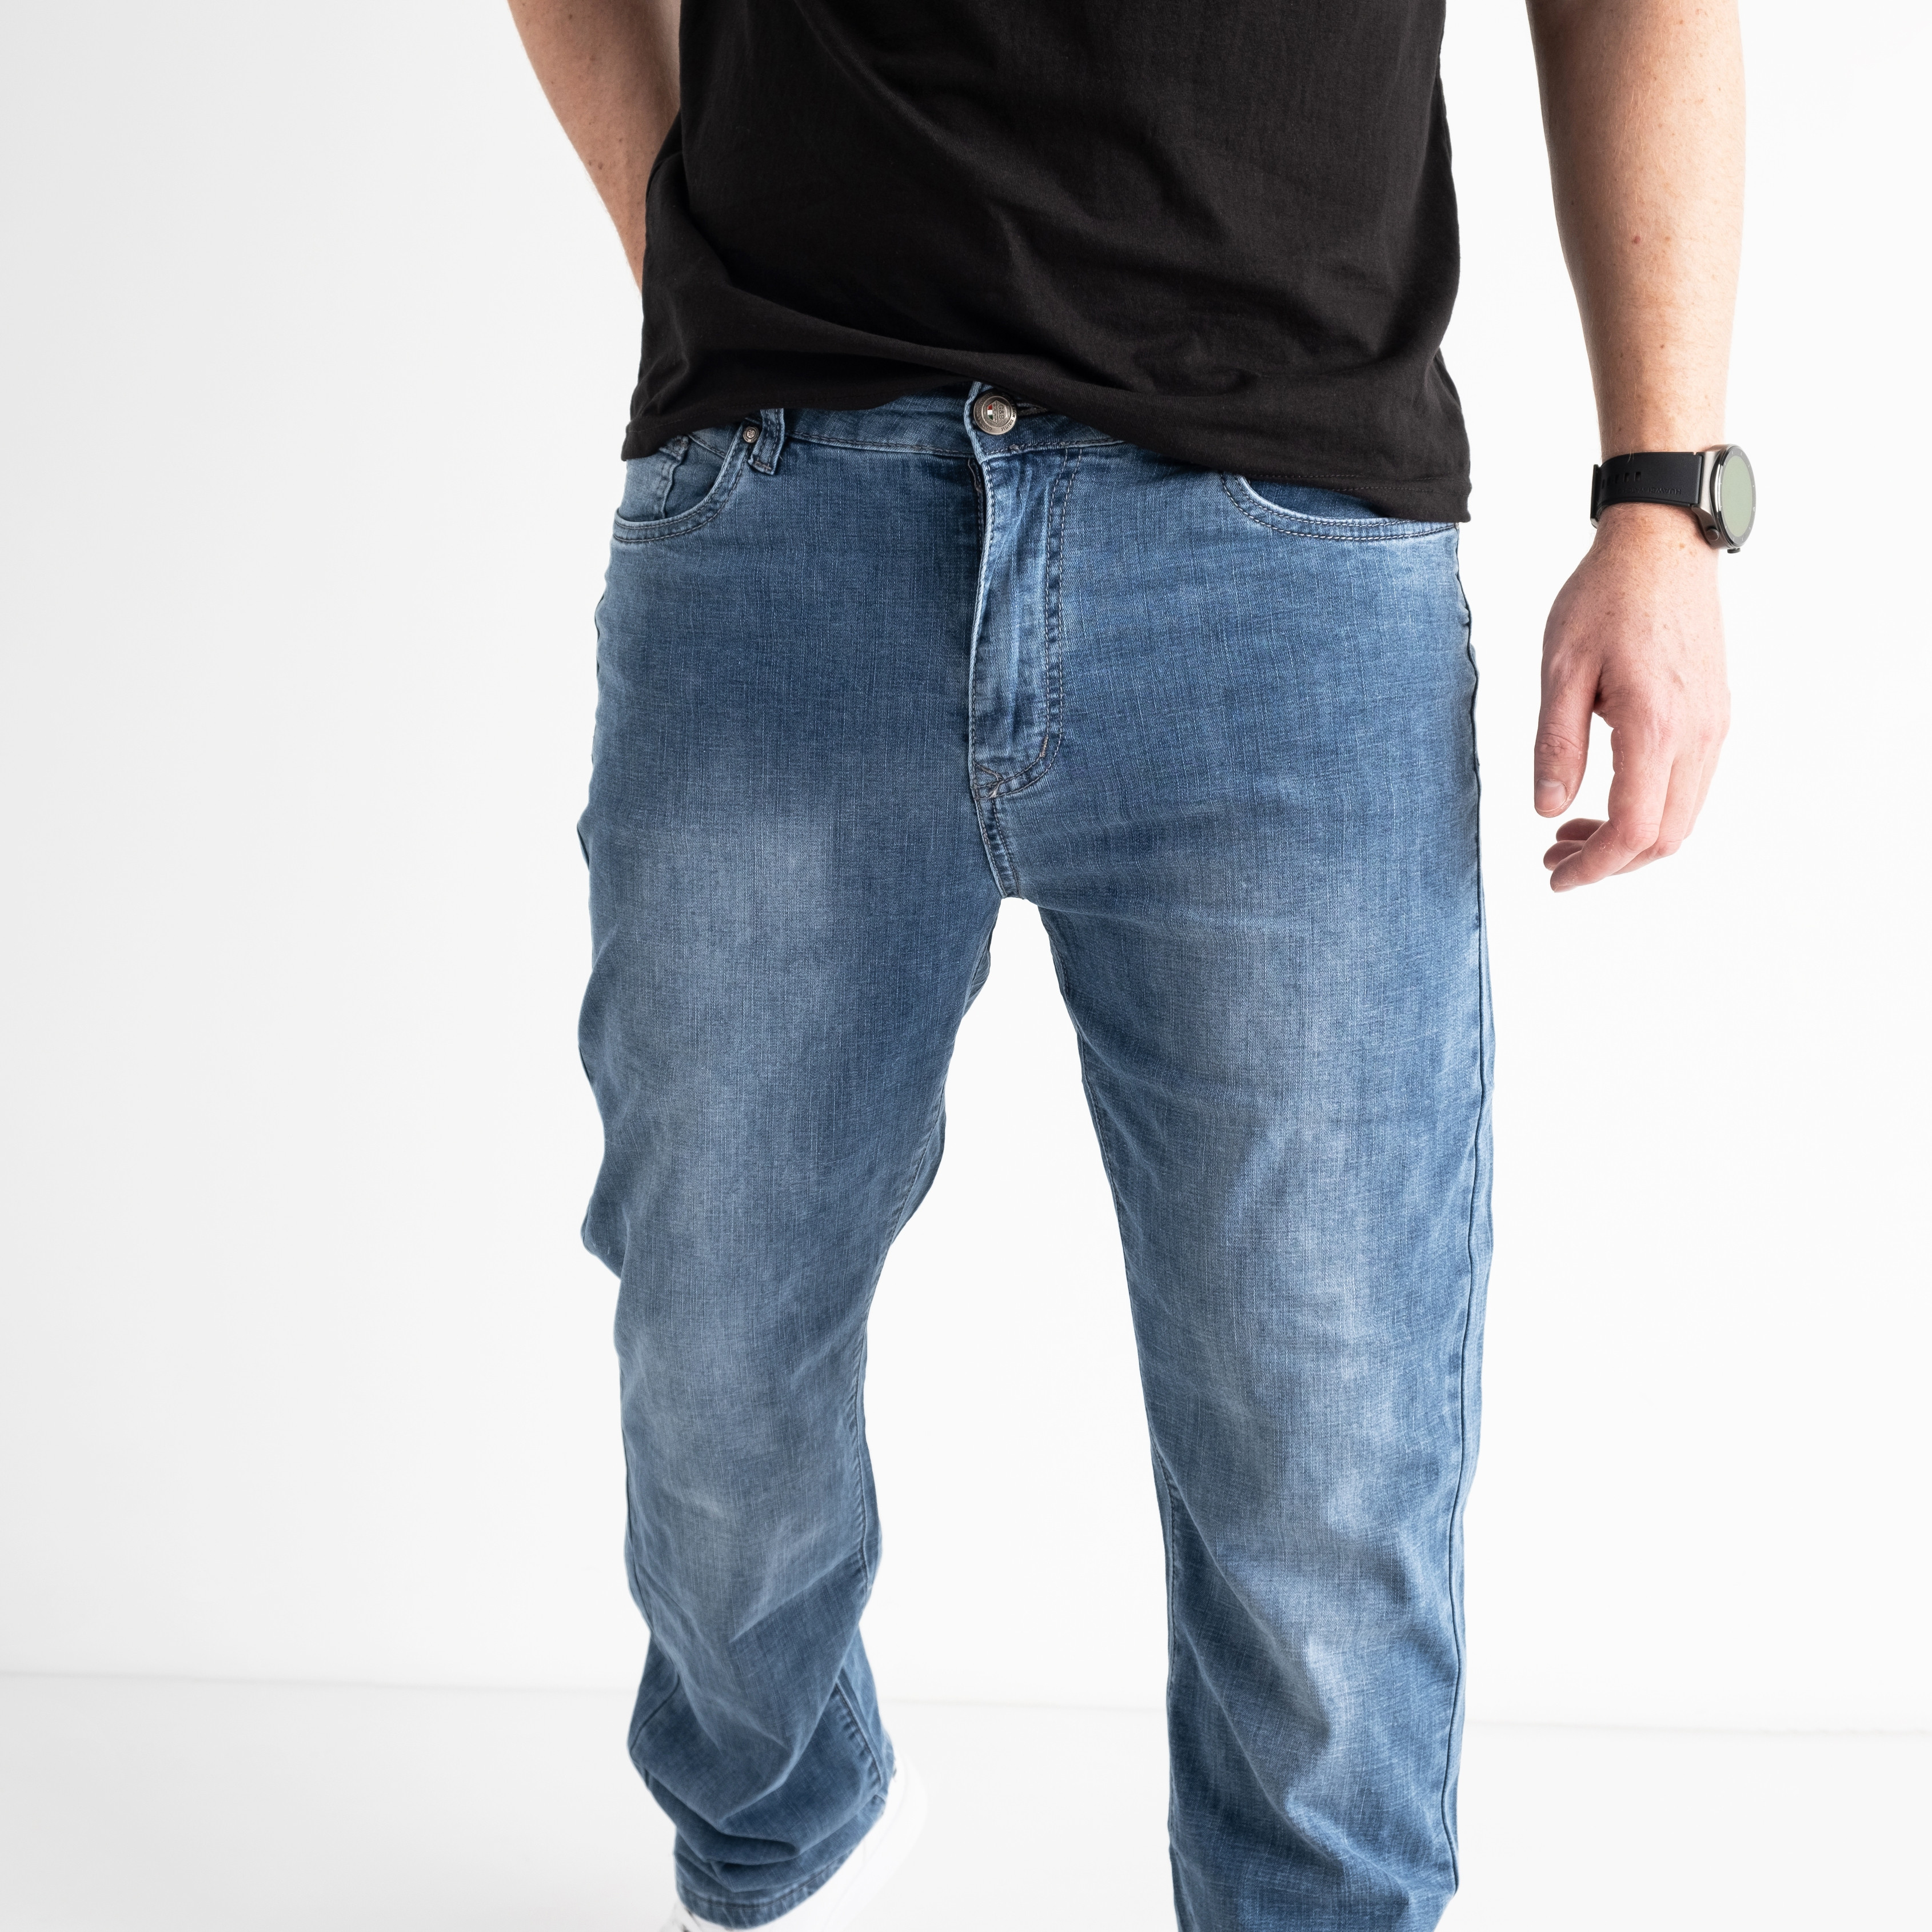 1060 GOD BARON джинсы мужские батальные голубые стрейчевые (8 ед.размеры: 36.38.40/2.42/2.44.46) 